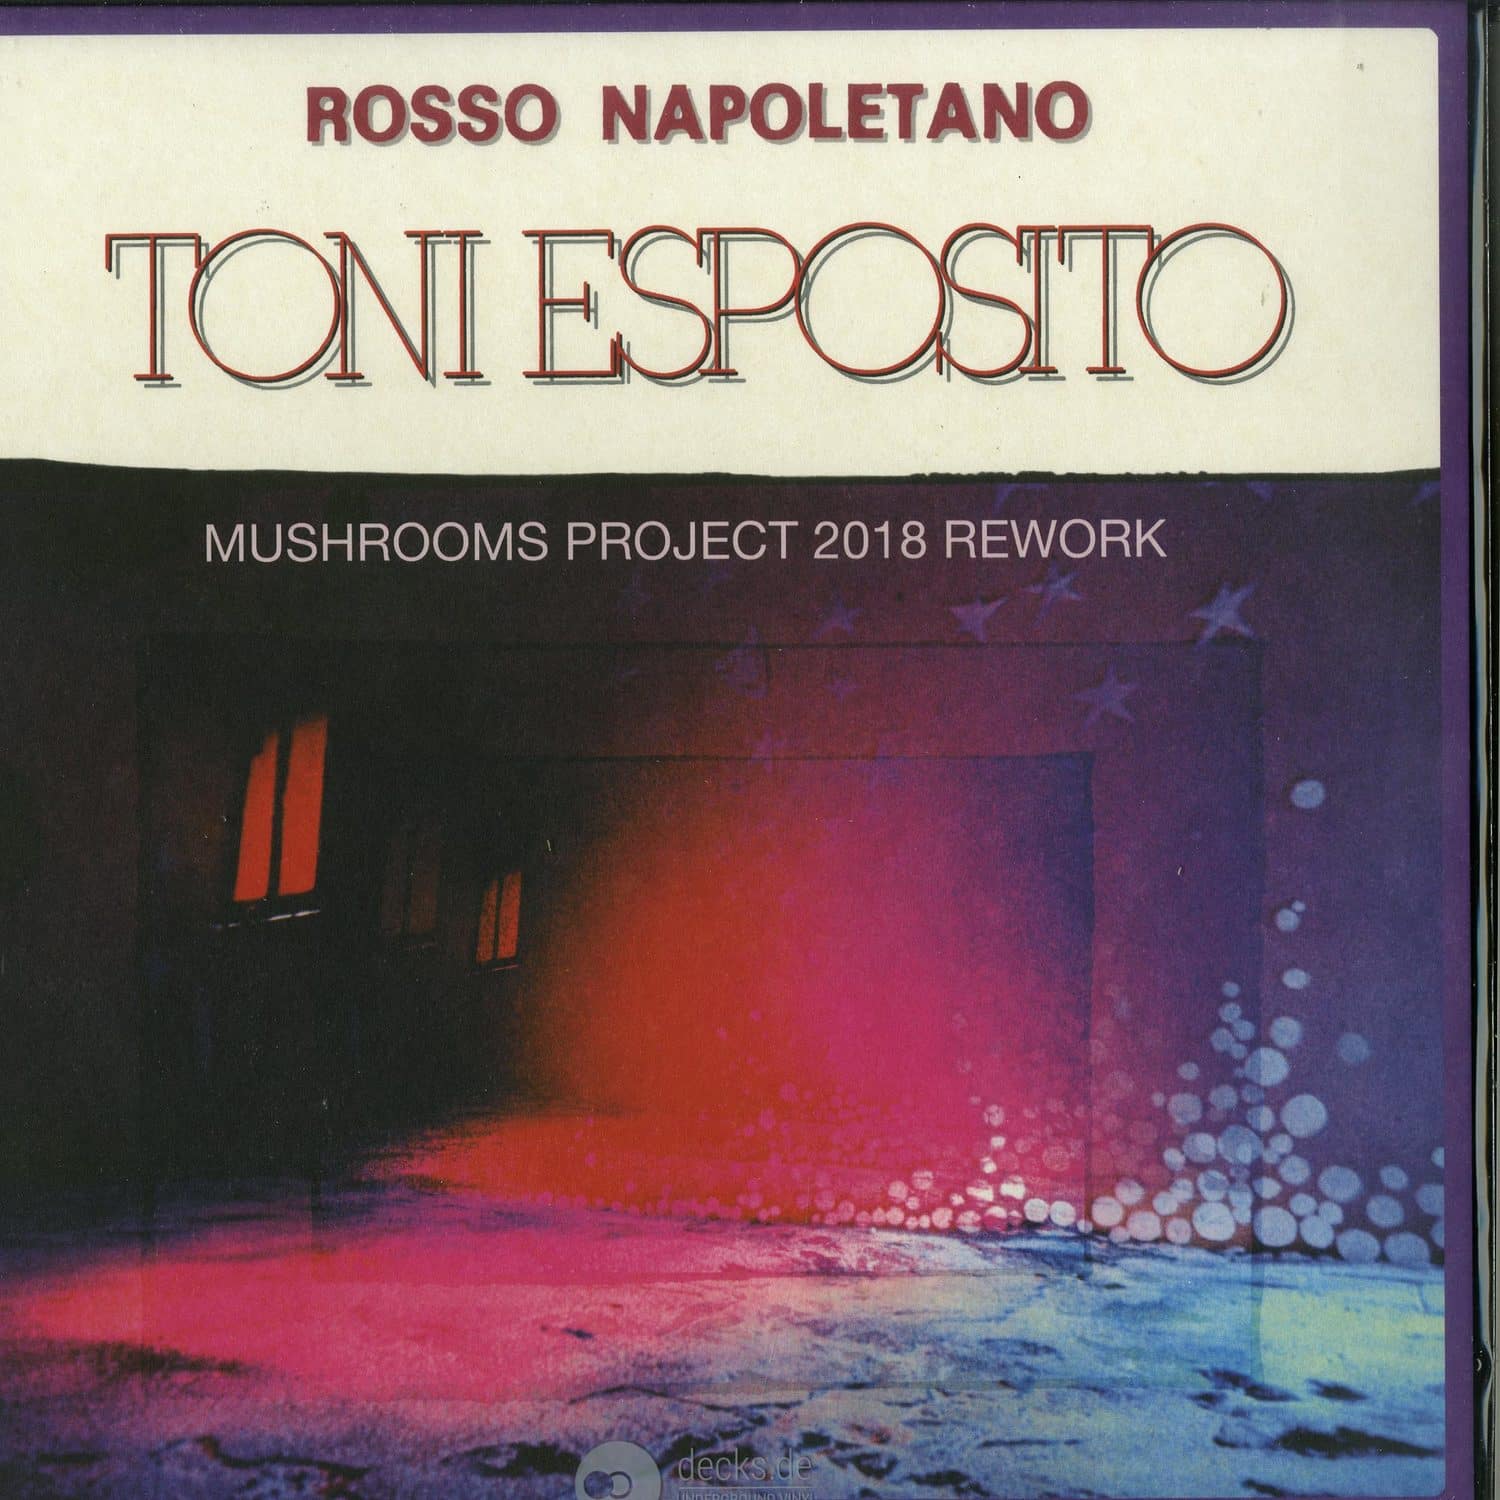 Tony Esposito - ROSSO NAPOLETANO 